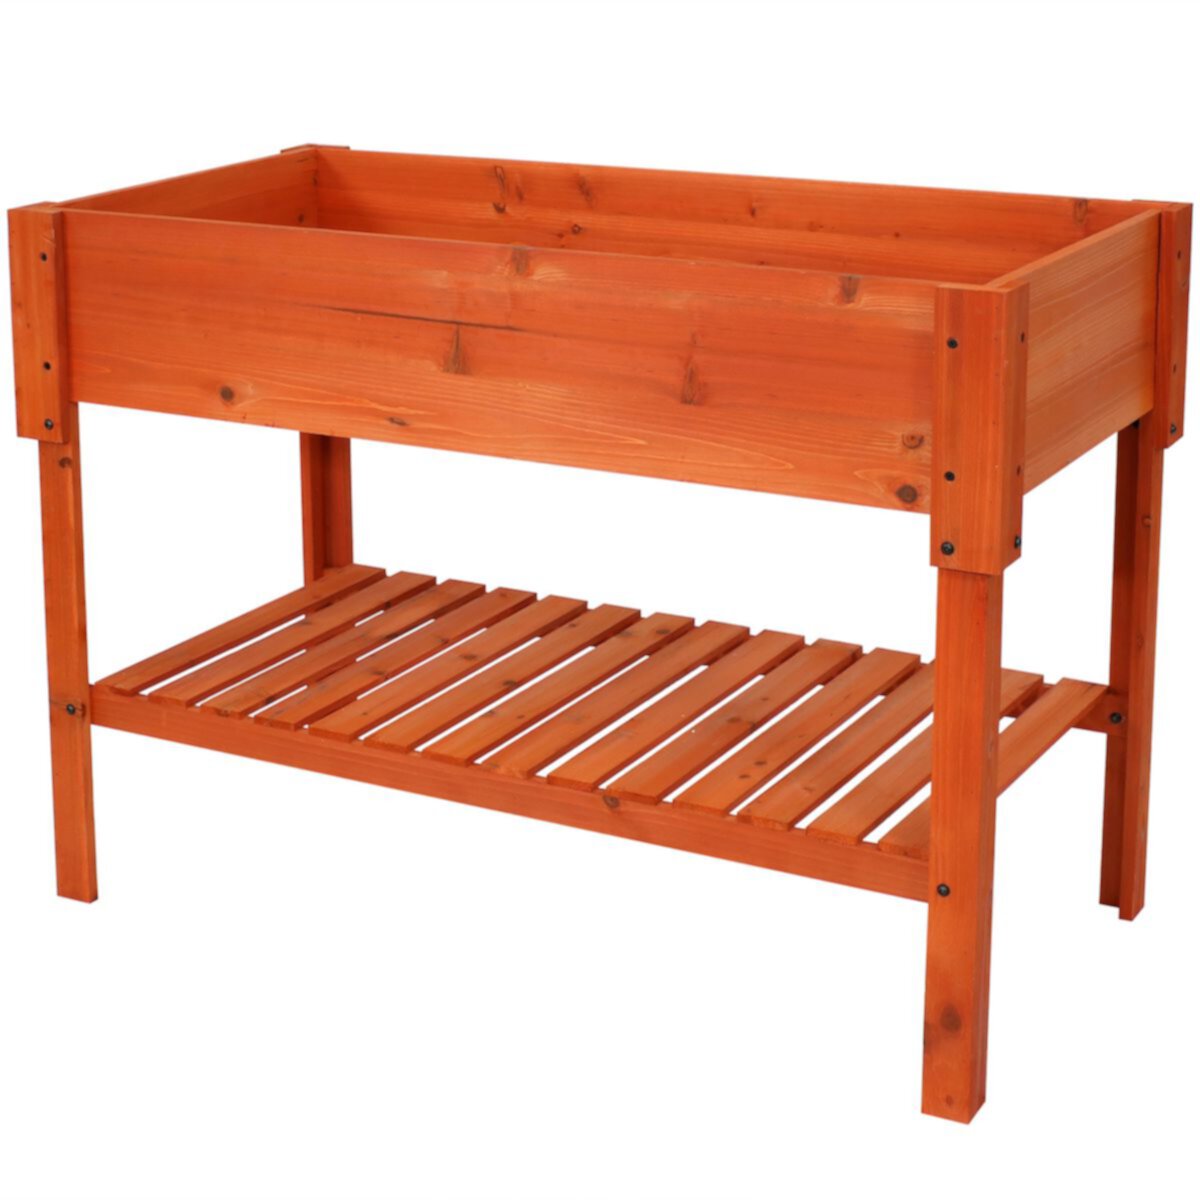 Sunnydaze Raised Wood Garden Bed Planter Box with Shelf - 42-Inch - Stained Finish Sunnydaze Decor